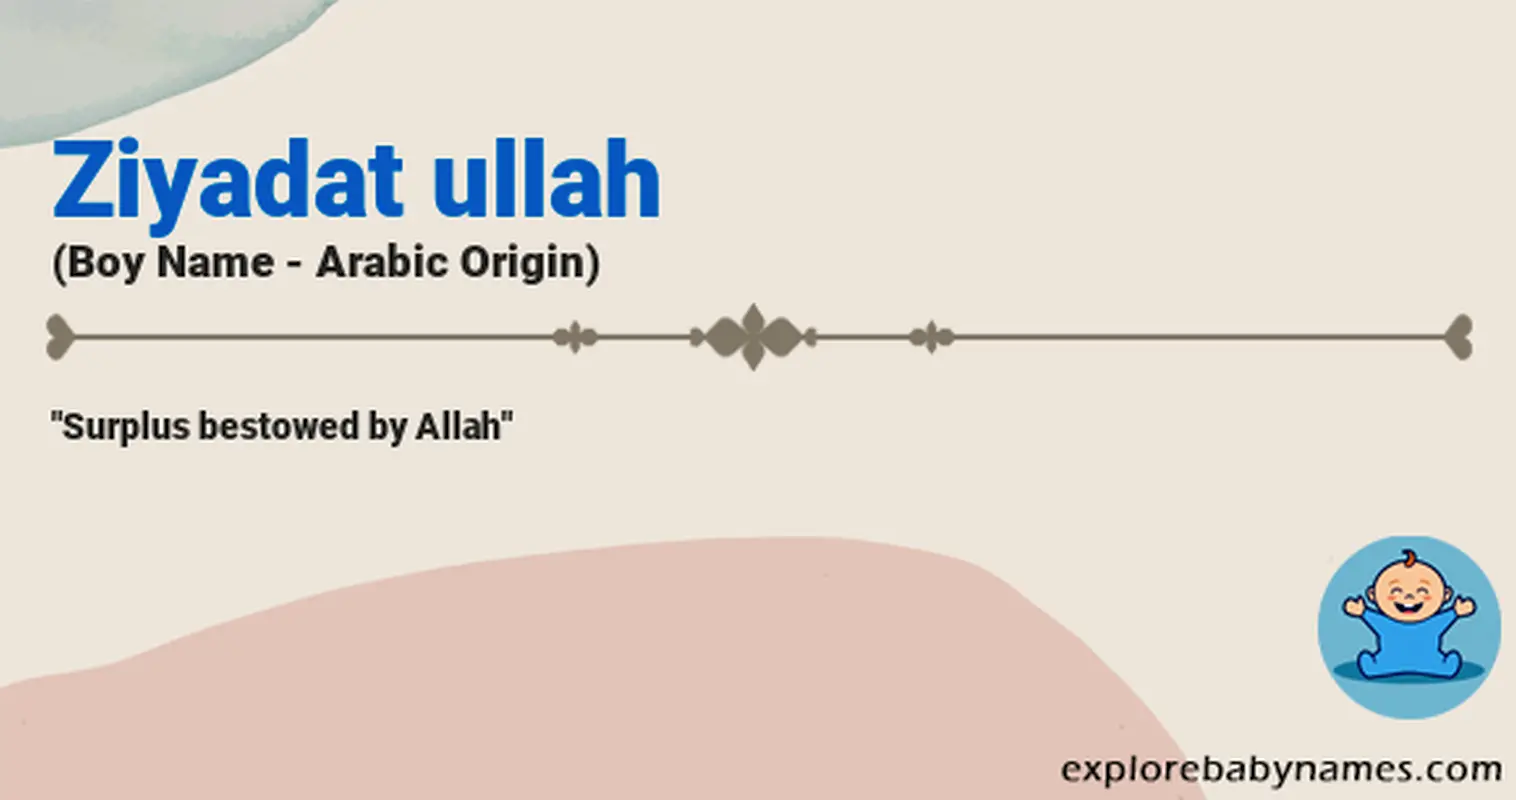 Meaning of Ziyadat ullah